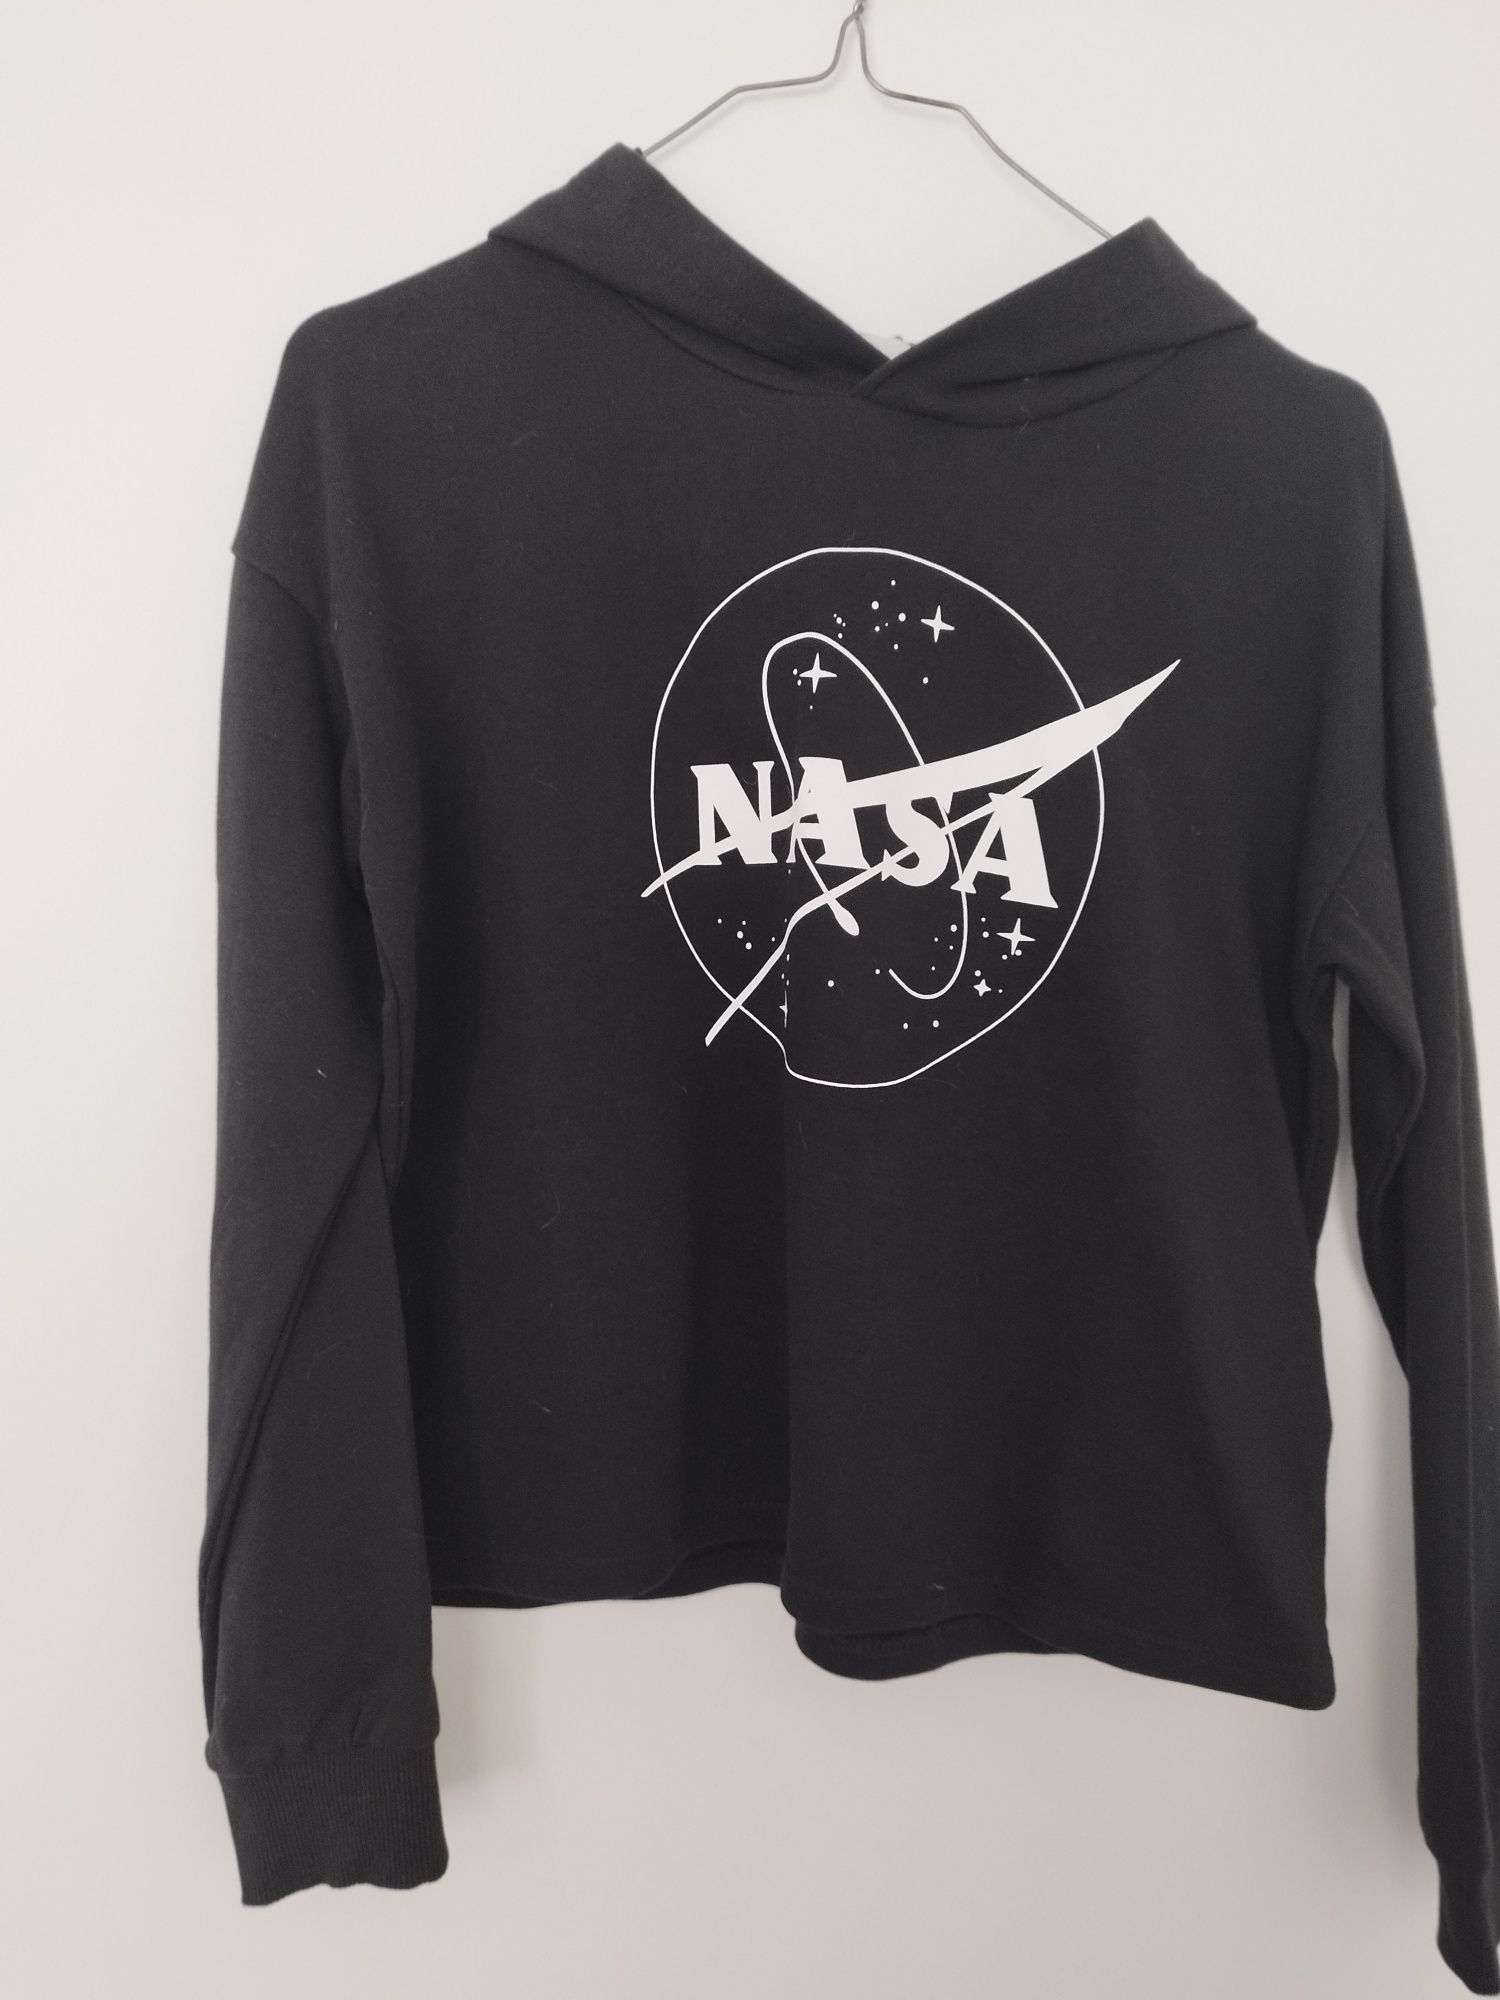 Duas camisolas símbolo NASA